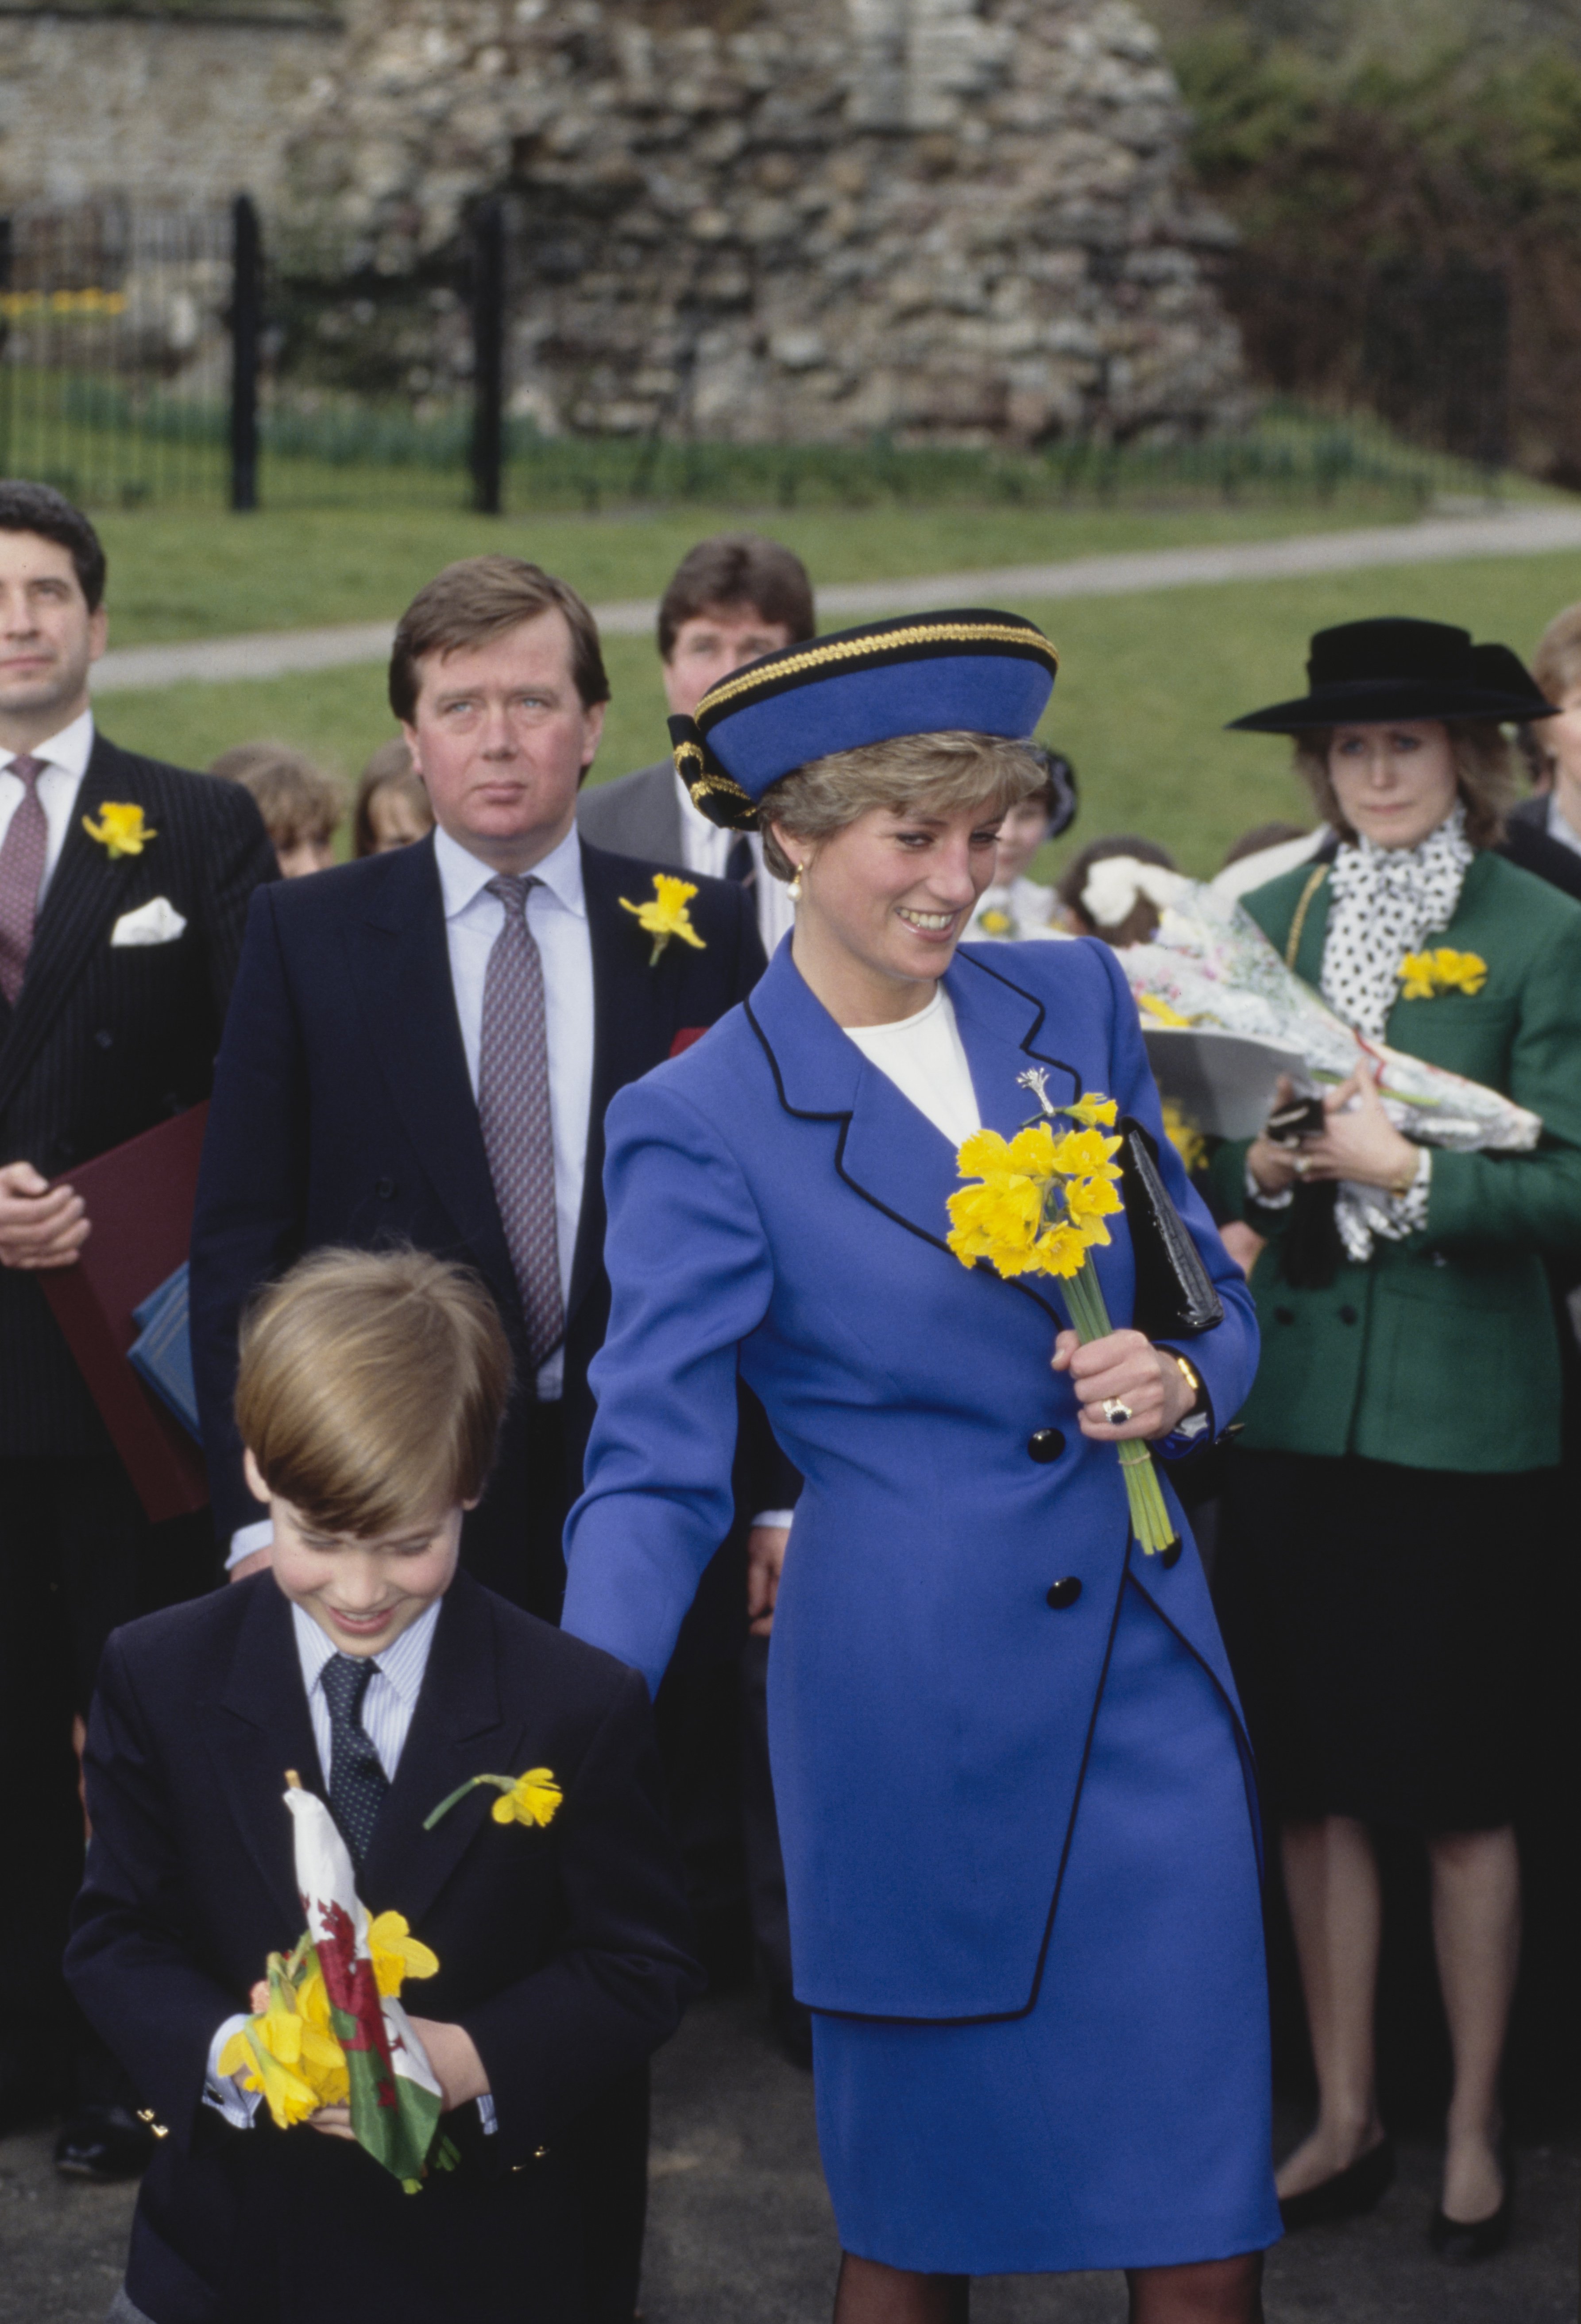 Los miembros de la realeza británica, el príncipe William y su madre, Diana, princesa de Gales (1961-1997), asisten al primer compromiso oficial de William el día de San David en Cardiff, Gales, el 1 de marzo de 1991. | Foto: Getty Images